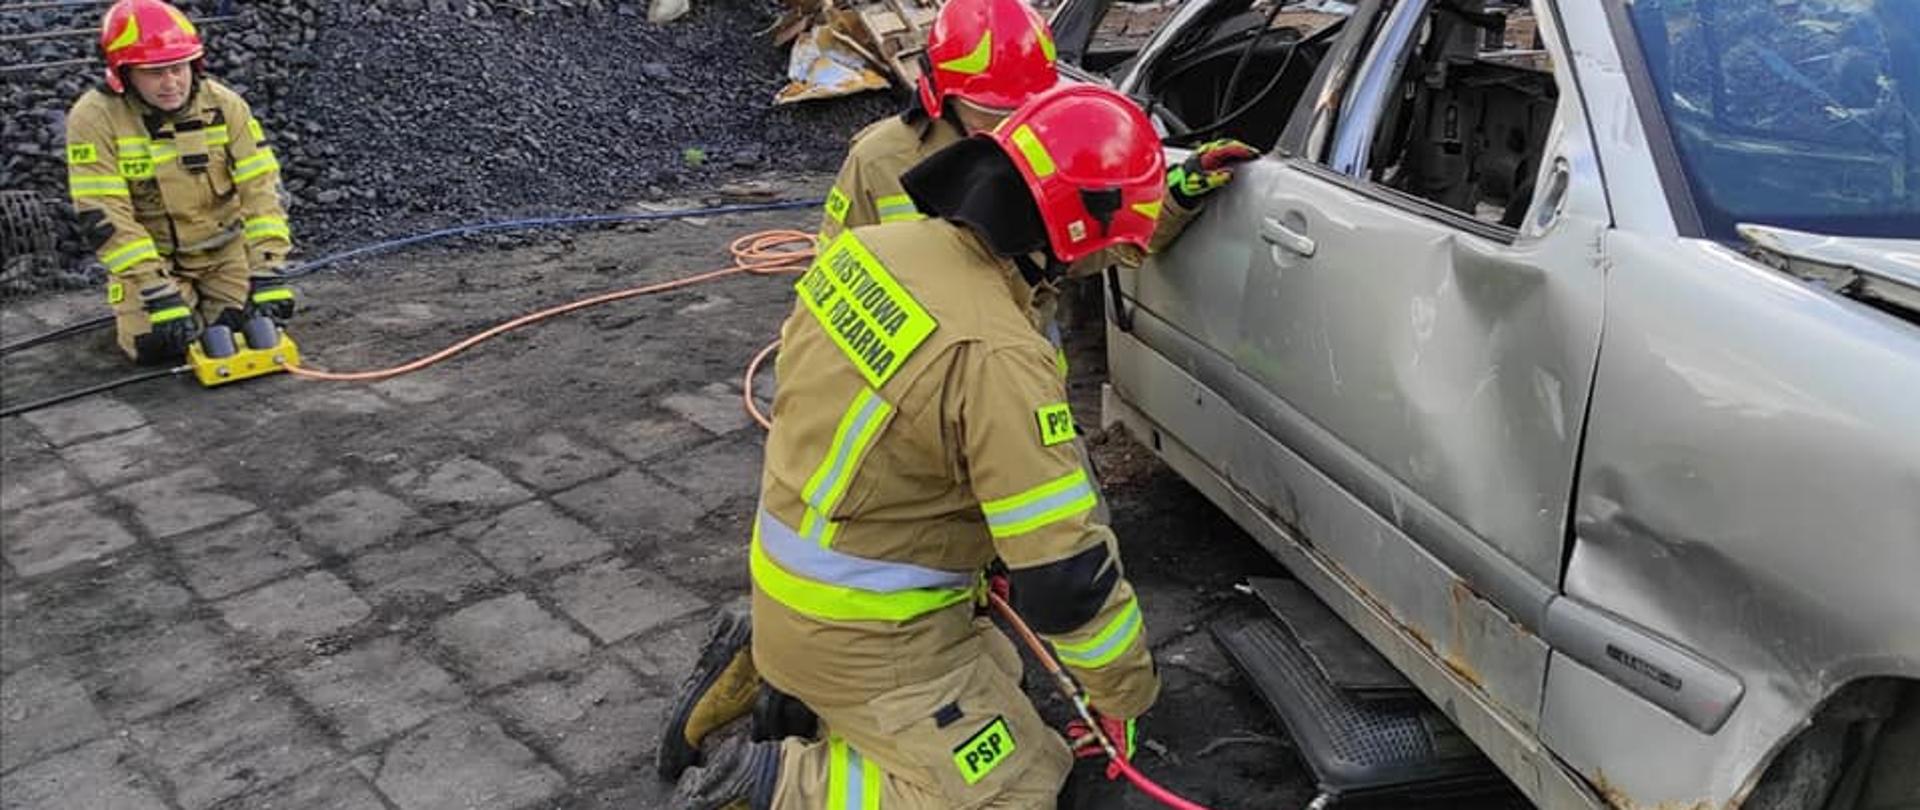 Na zdjęciu widać trzech strażaków ratowników ubranych w ubrania specjalne i hełmy, którzy przy pomocy sprzętu pneumatycznego unoszą prawy bok pojazdu. W tle widać złom i węgiel.